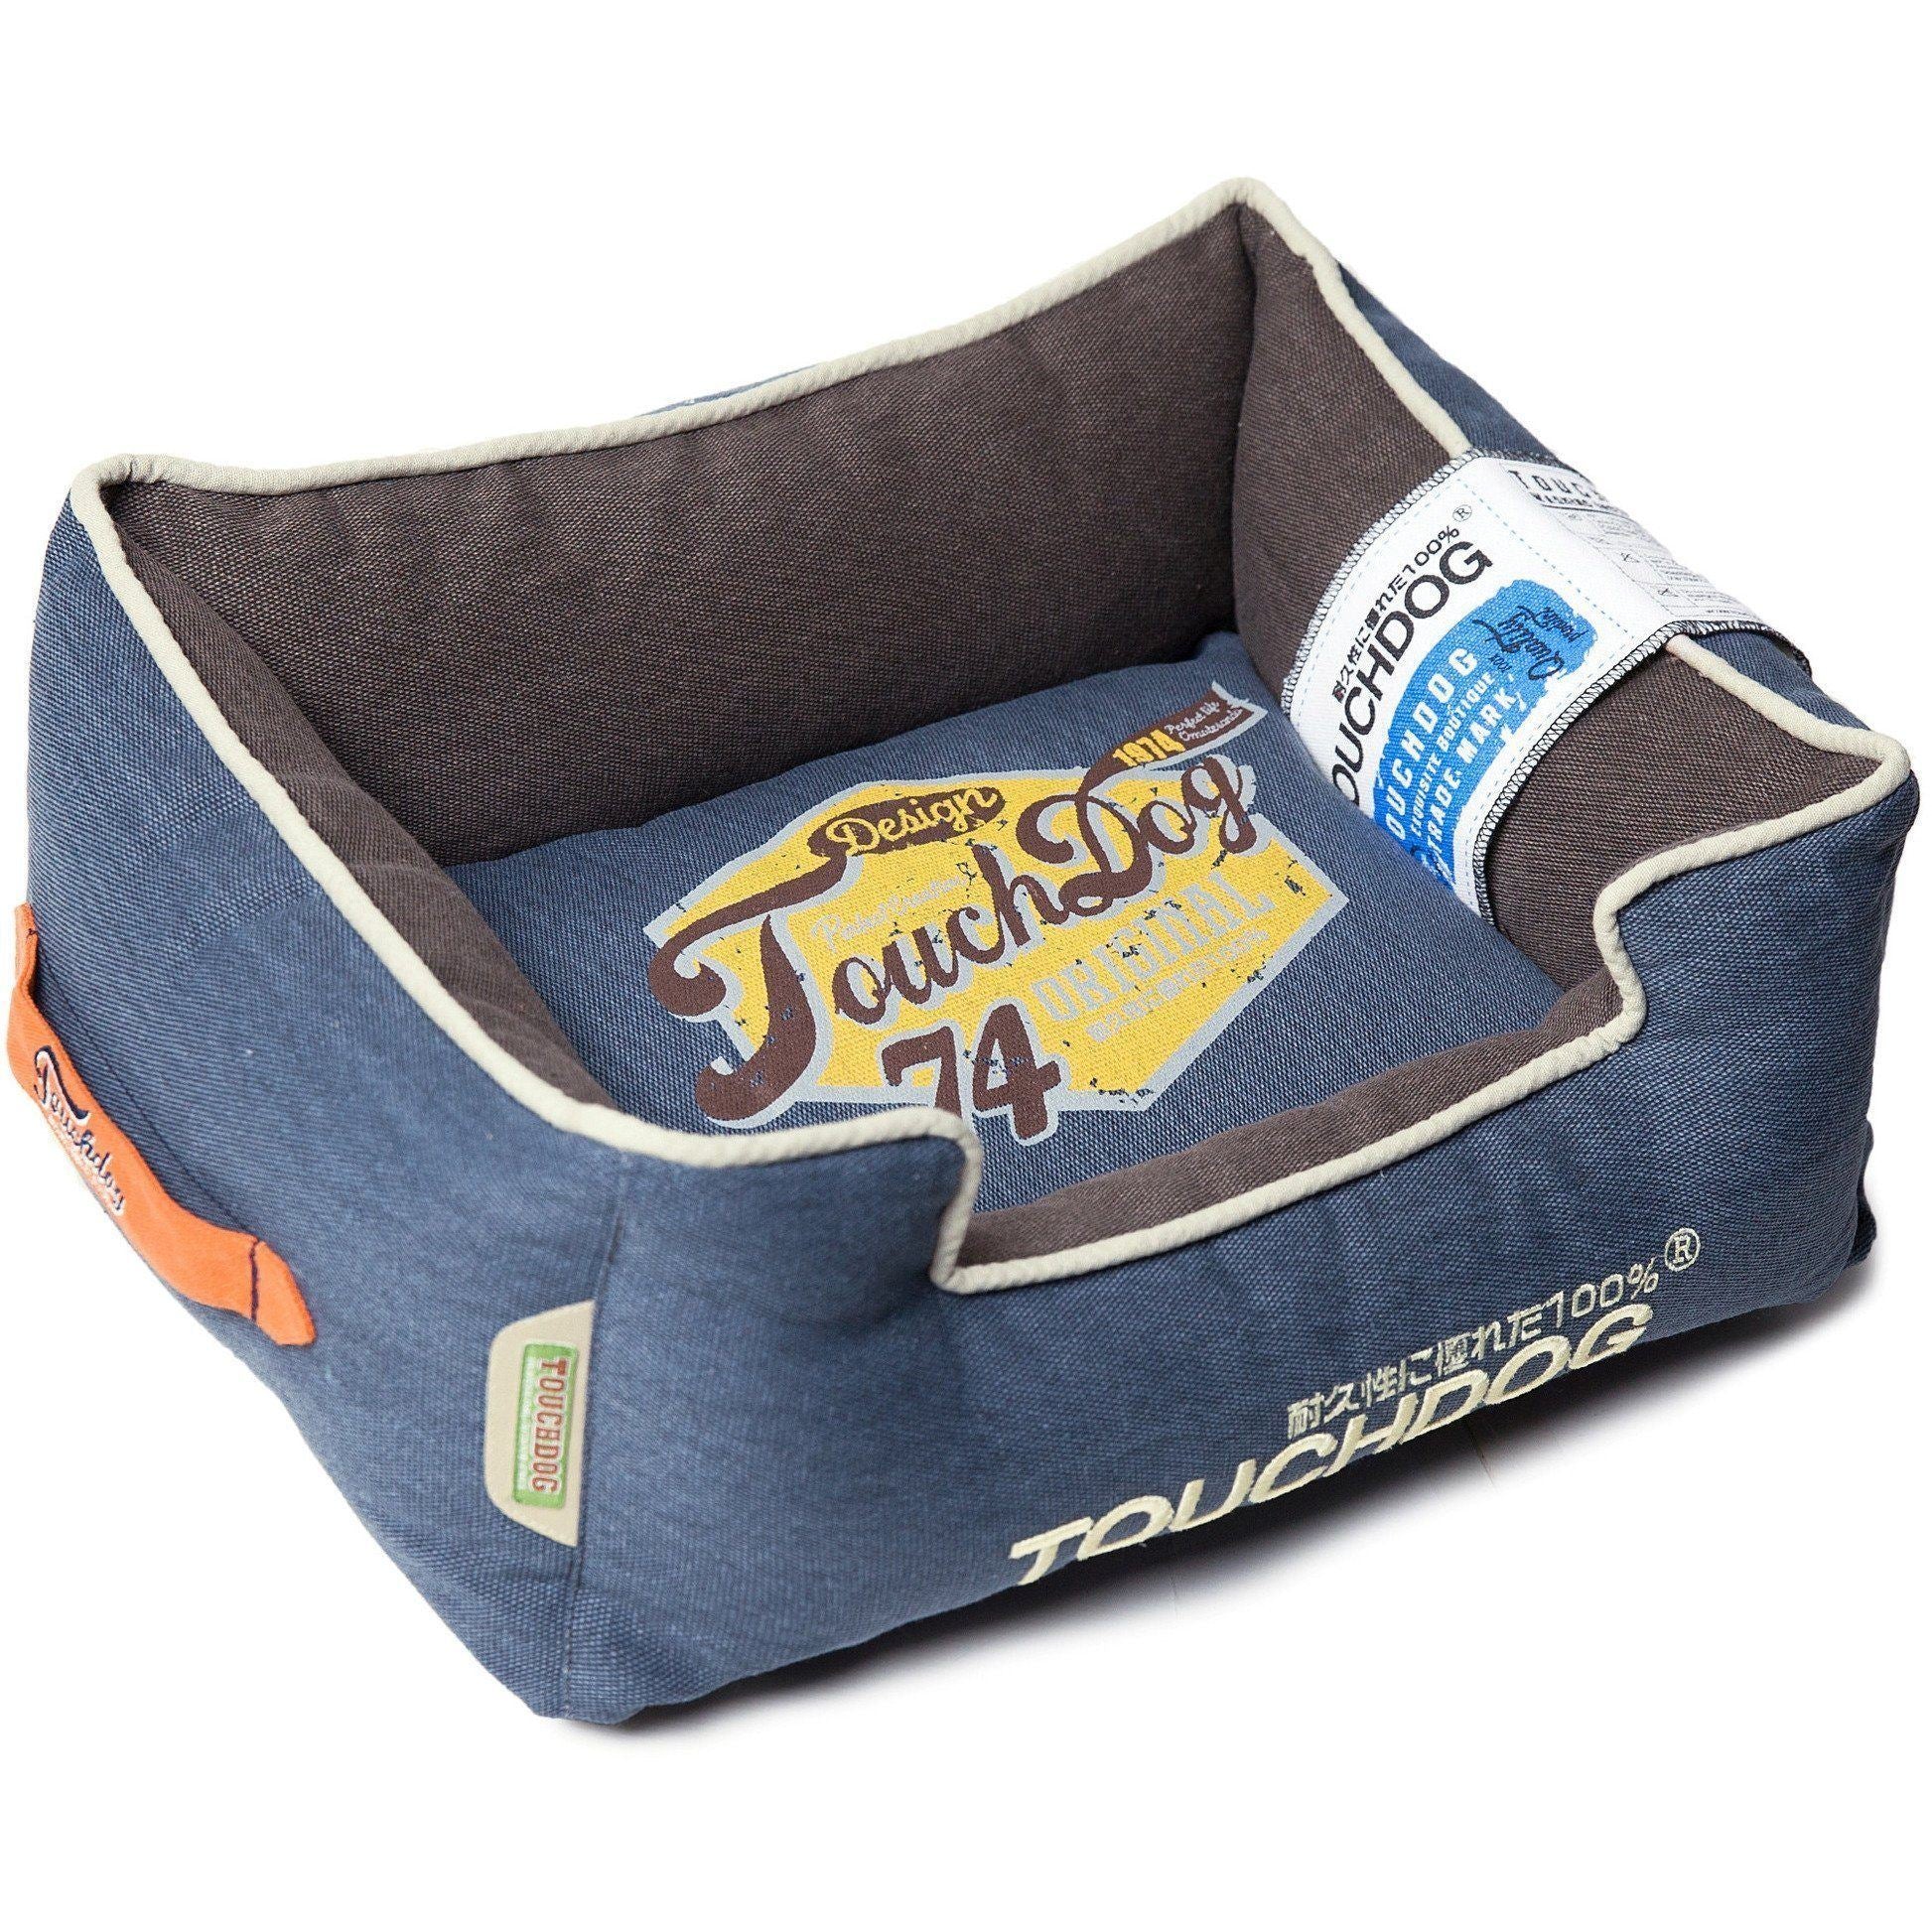 Touchdog ® 'Sporty Vintage' Original Reversible Rectangular Designer Dog Bed Medium Midnight Blue, Dark Grey